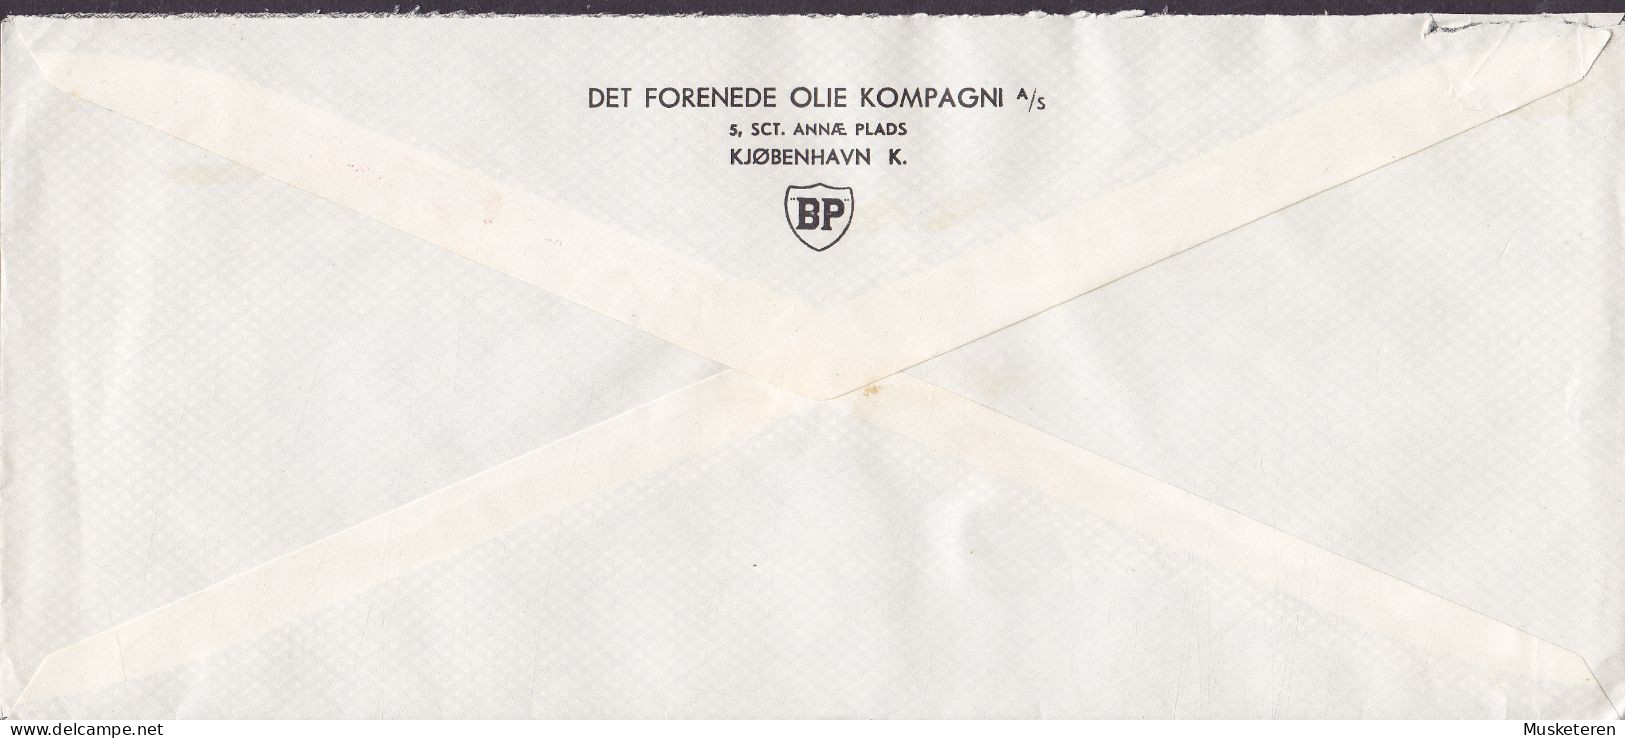 Denmark DET FORENEDE OLIE KOMPAGNI British Petrol Cachet ATM Cancel '399', KØBENHAVN 1948 Meter Cancel Cover (2 Scans) - Máquinas Franqueo (EMA)